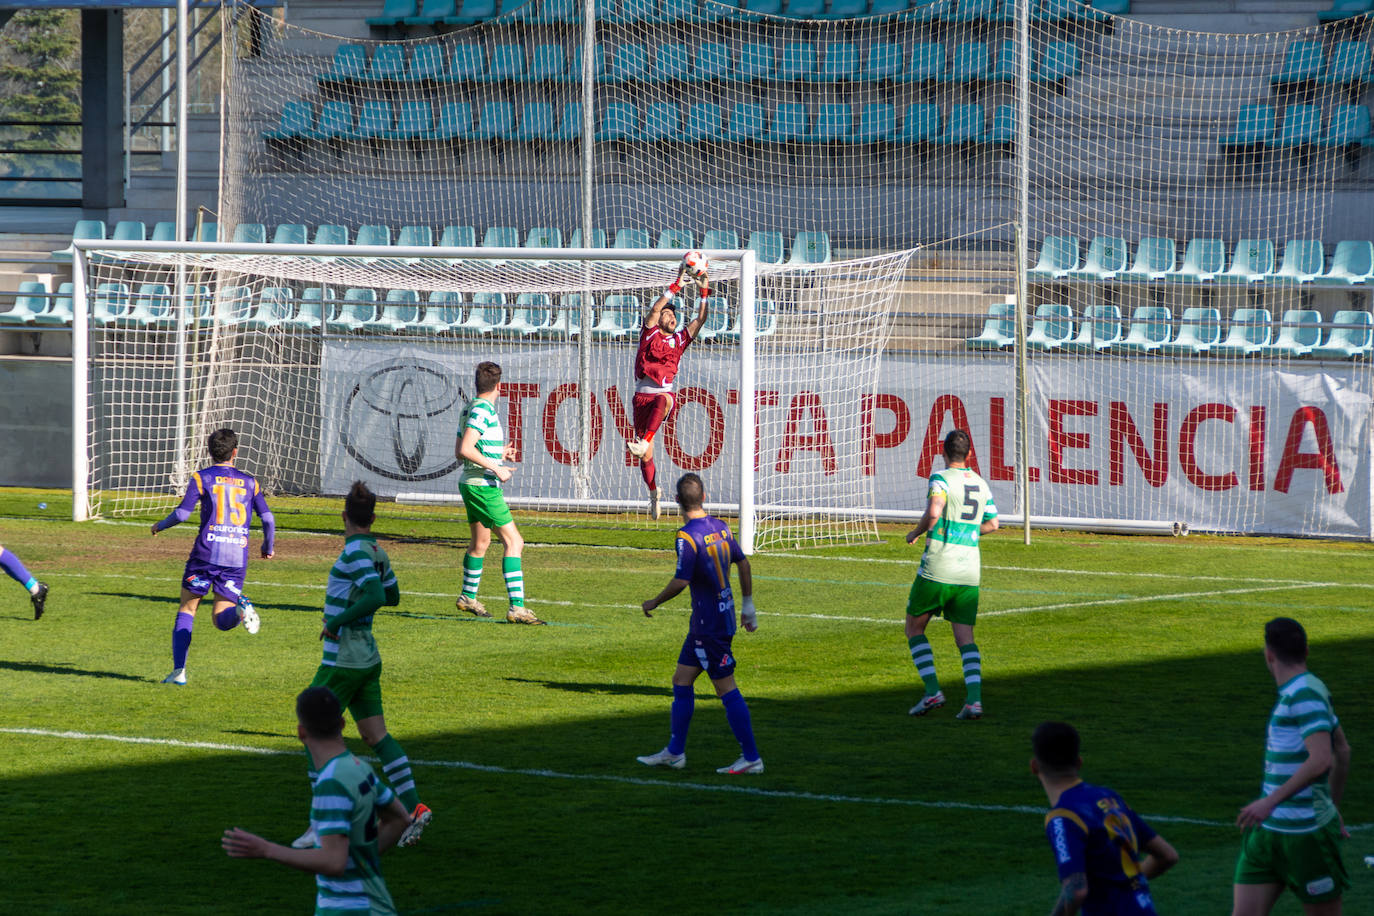 El conjunto leonés se dejó sus opciones de playoff en la Balastera.